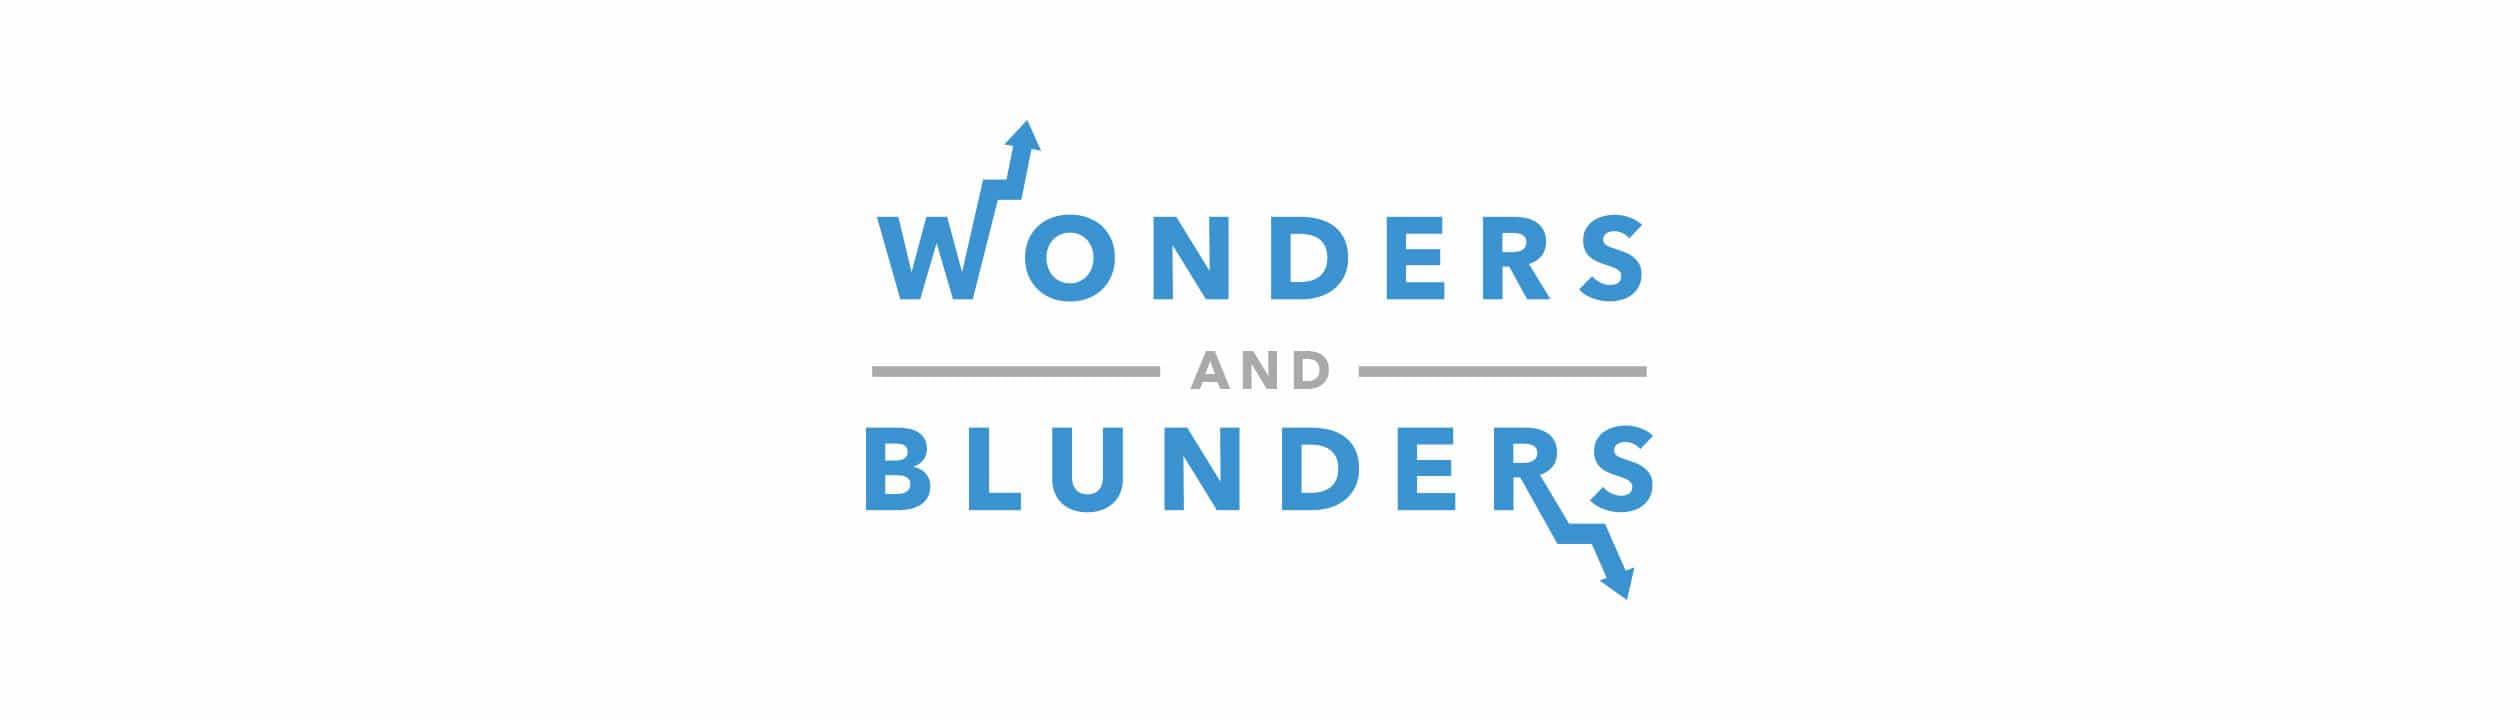 Wonders & Blunders: Buffett, Banks & Bots